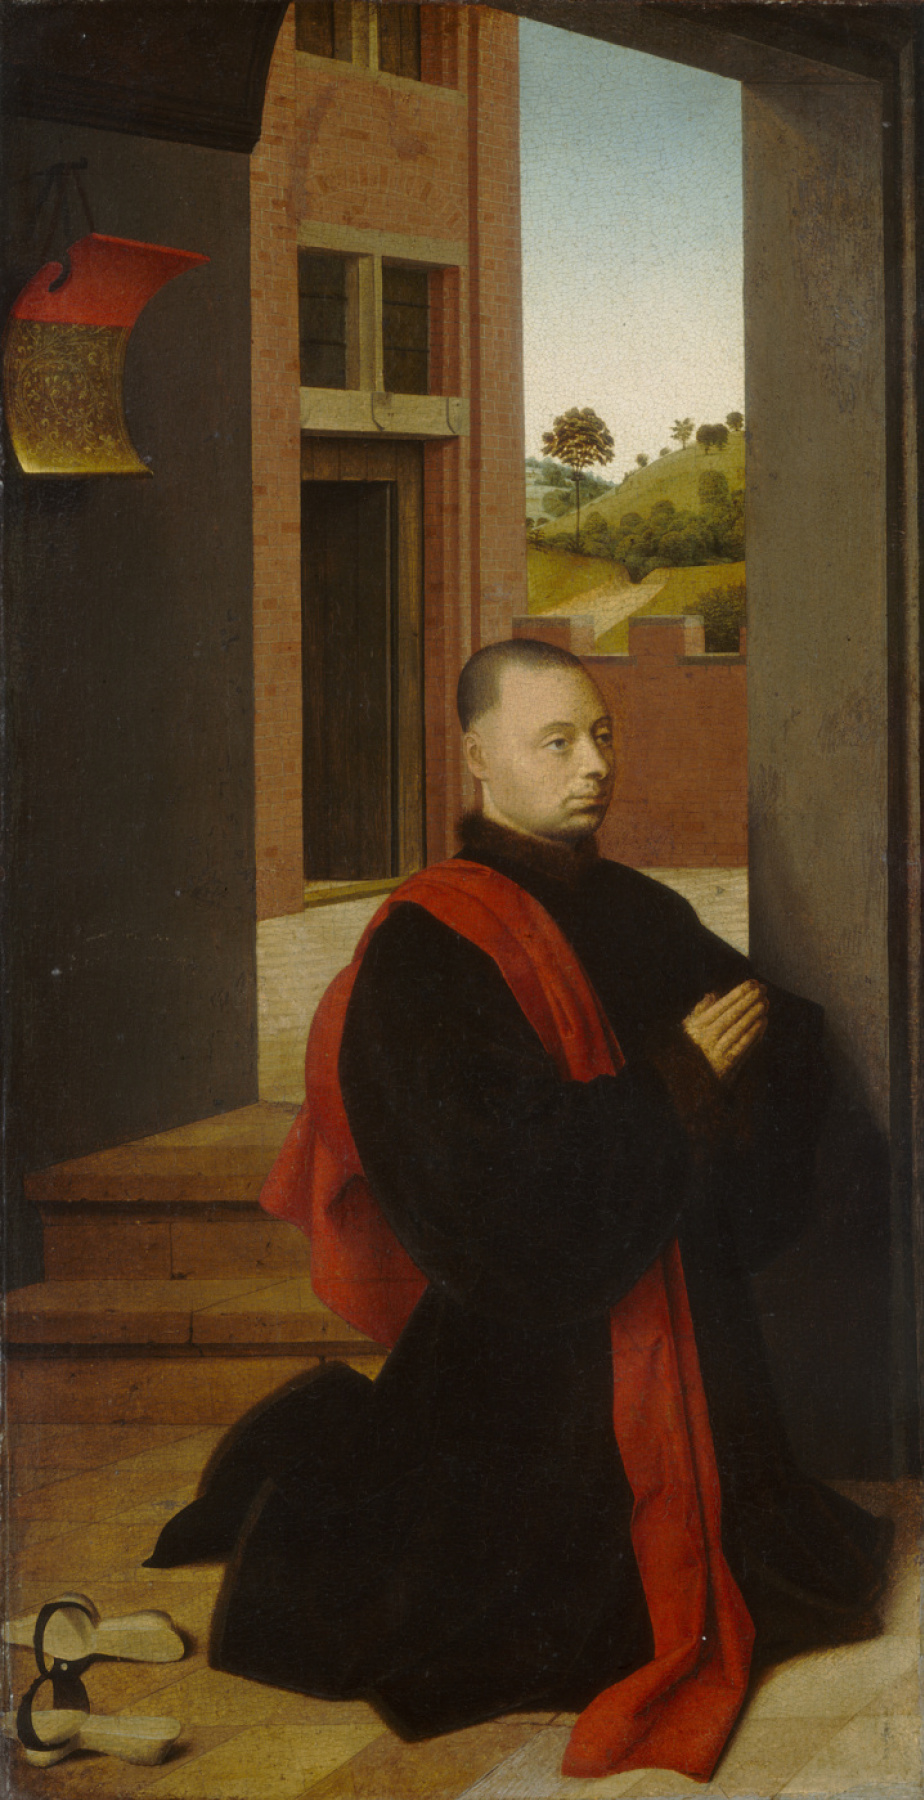 Petrus Christus. Portrait of a man